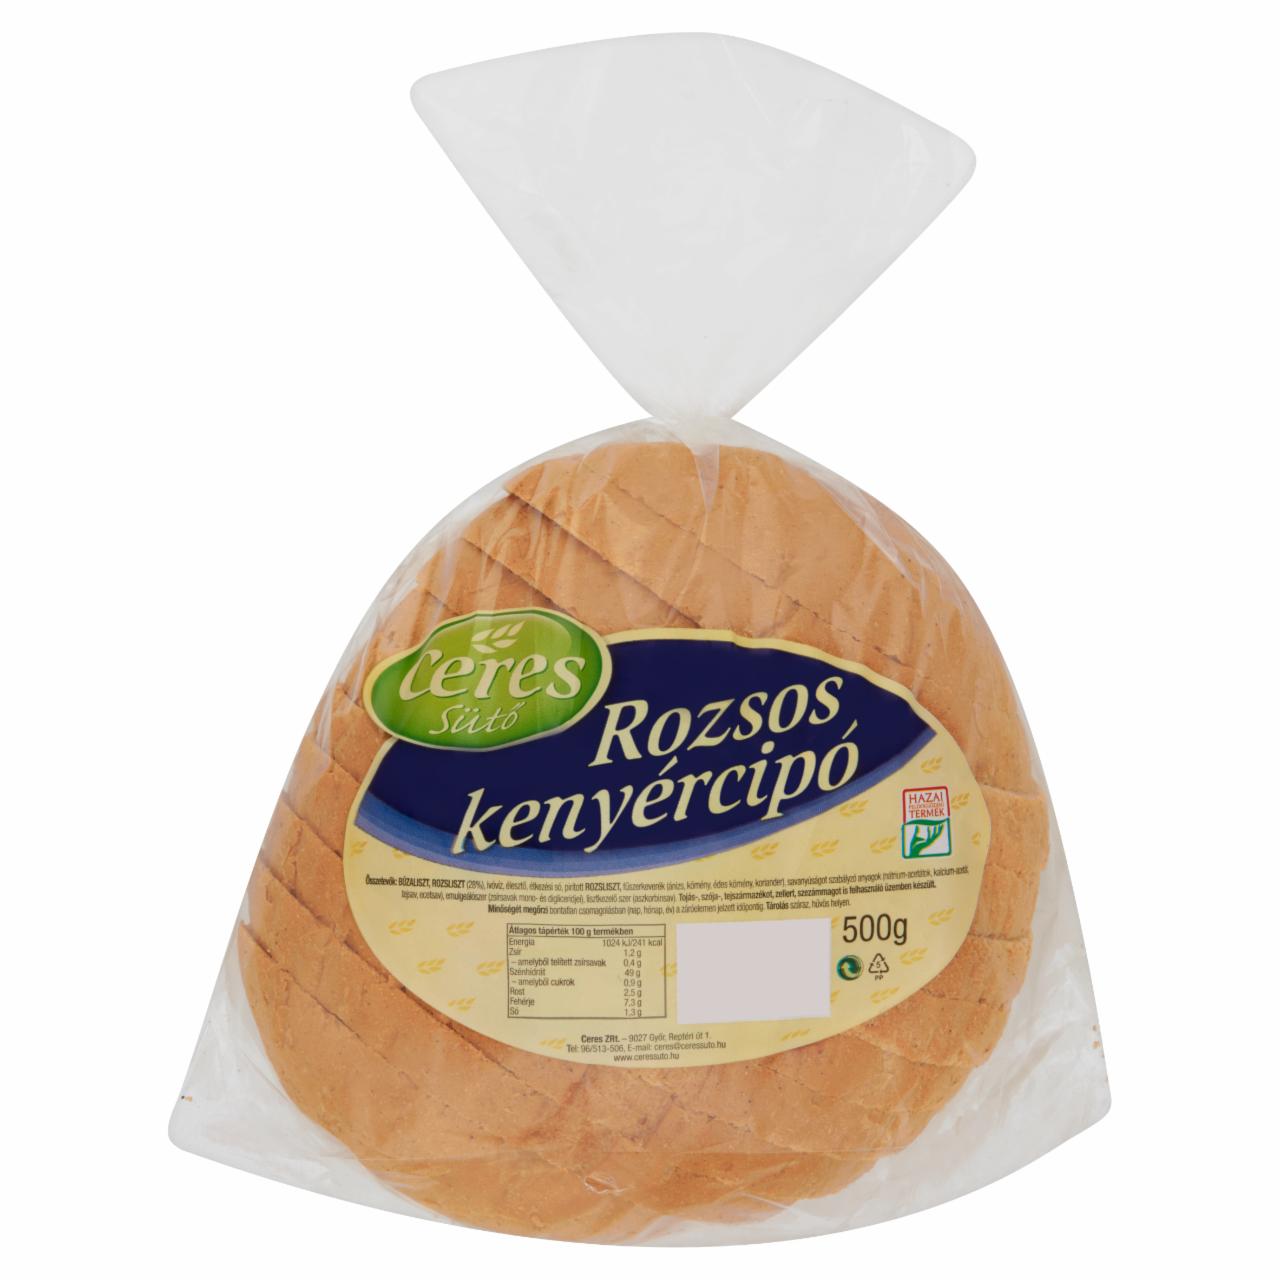 Képek - Ceres Sütő rozsos kenyércipó 500 g